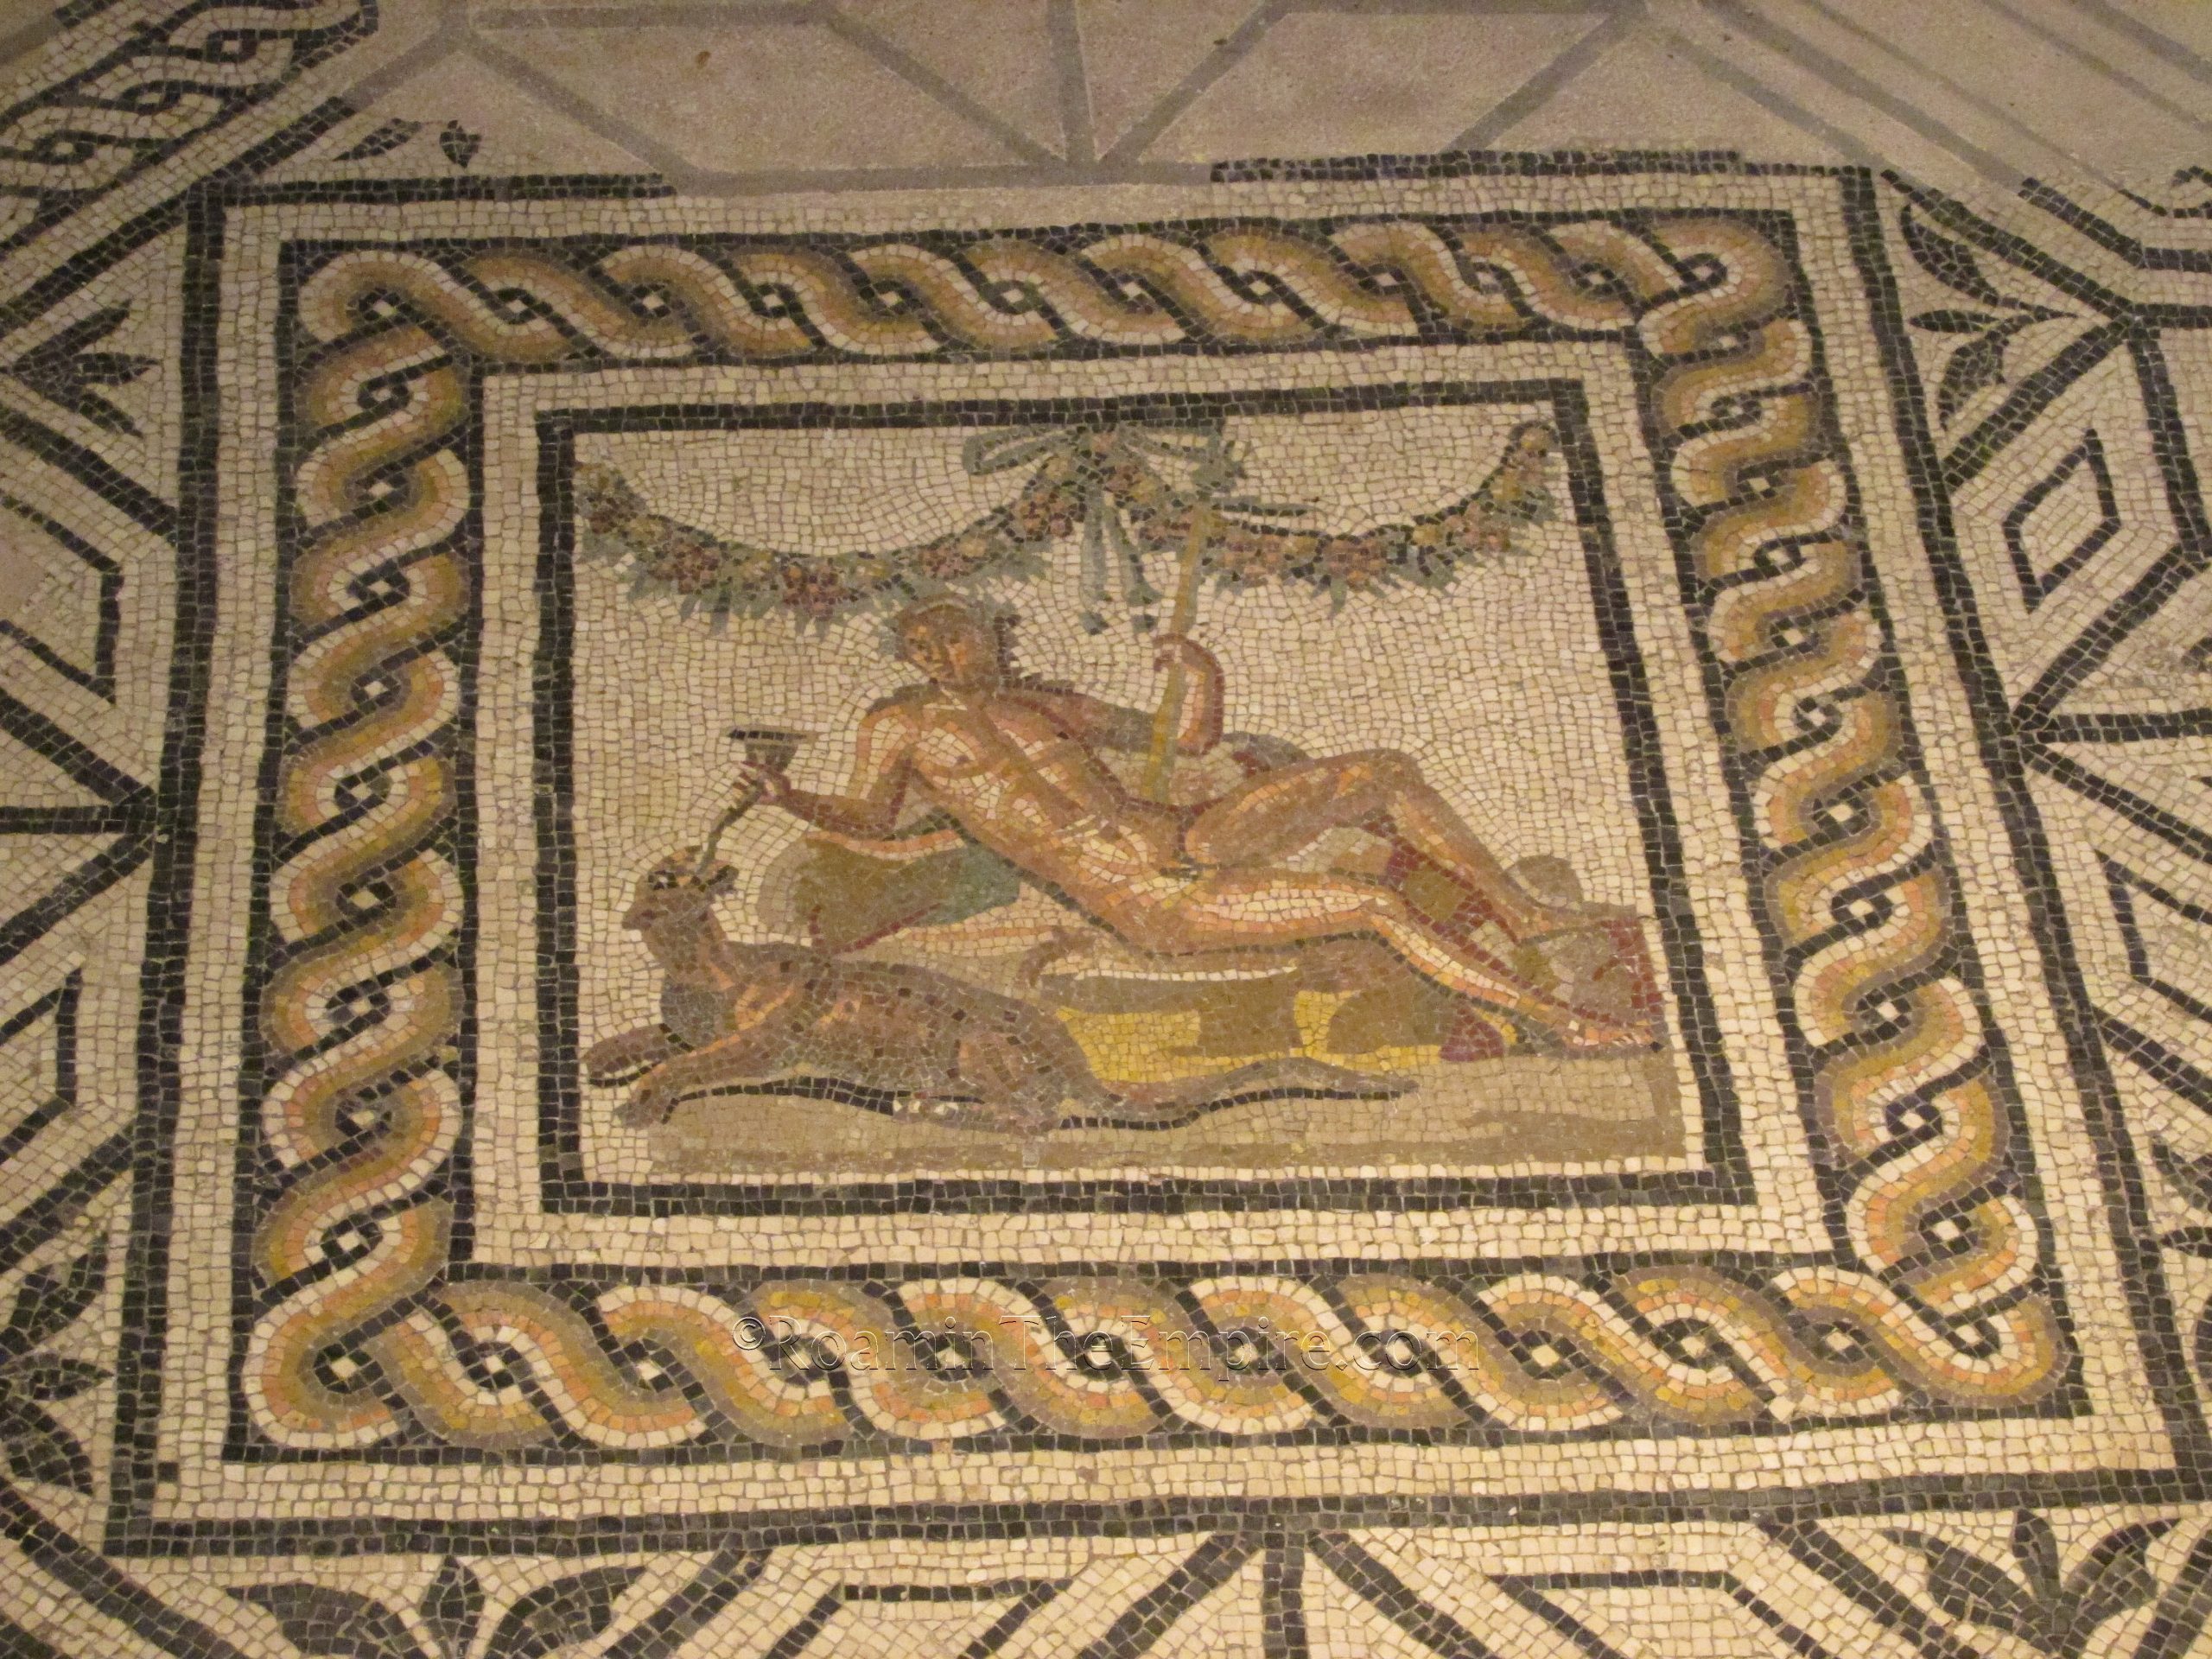 Dionysus mosaic in the Domus of Dionysus. Museo di Santa Giulia.